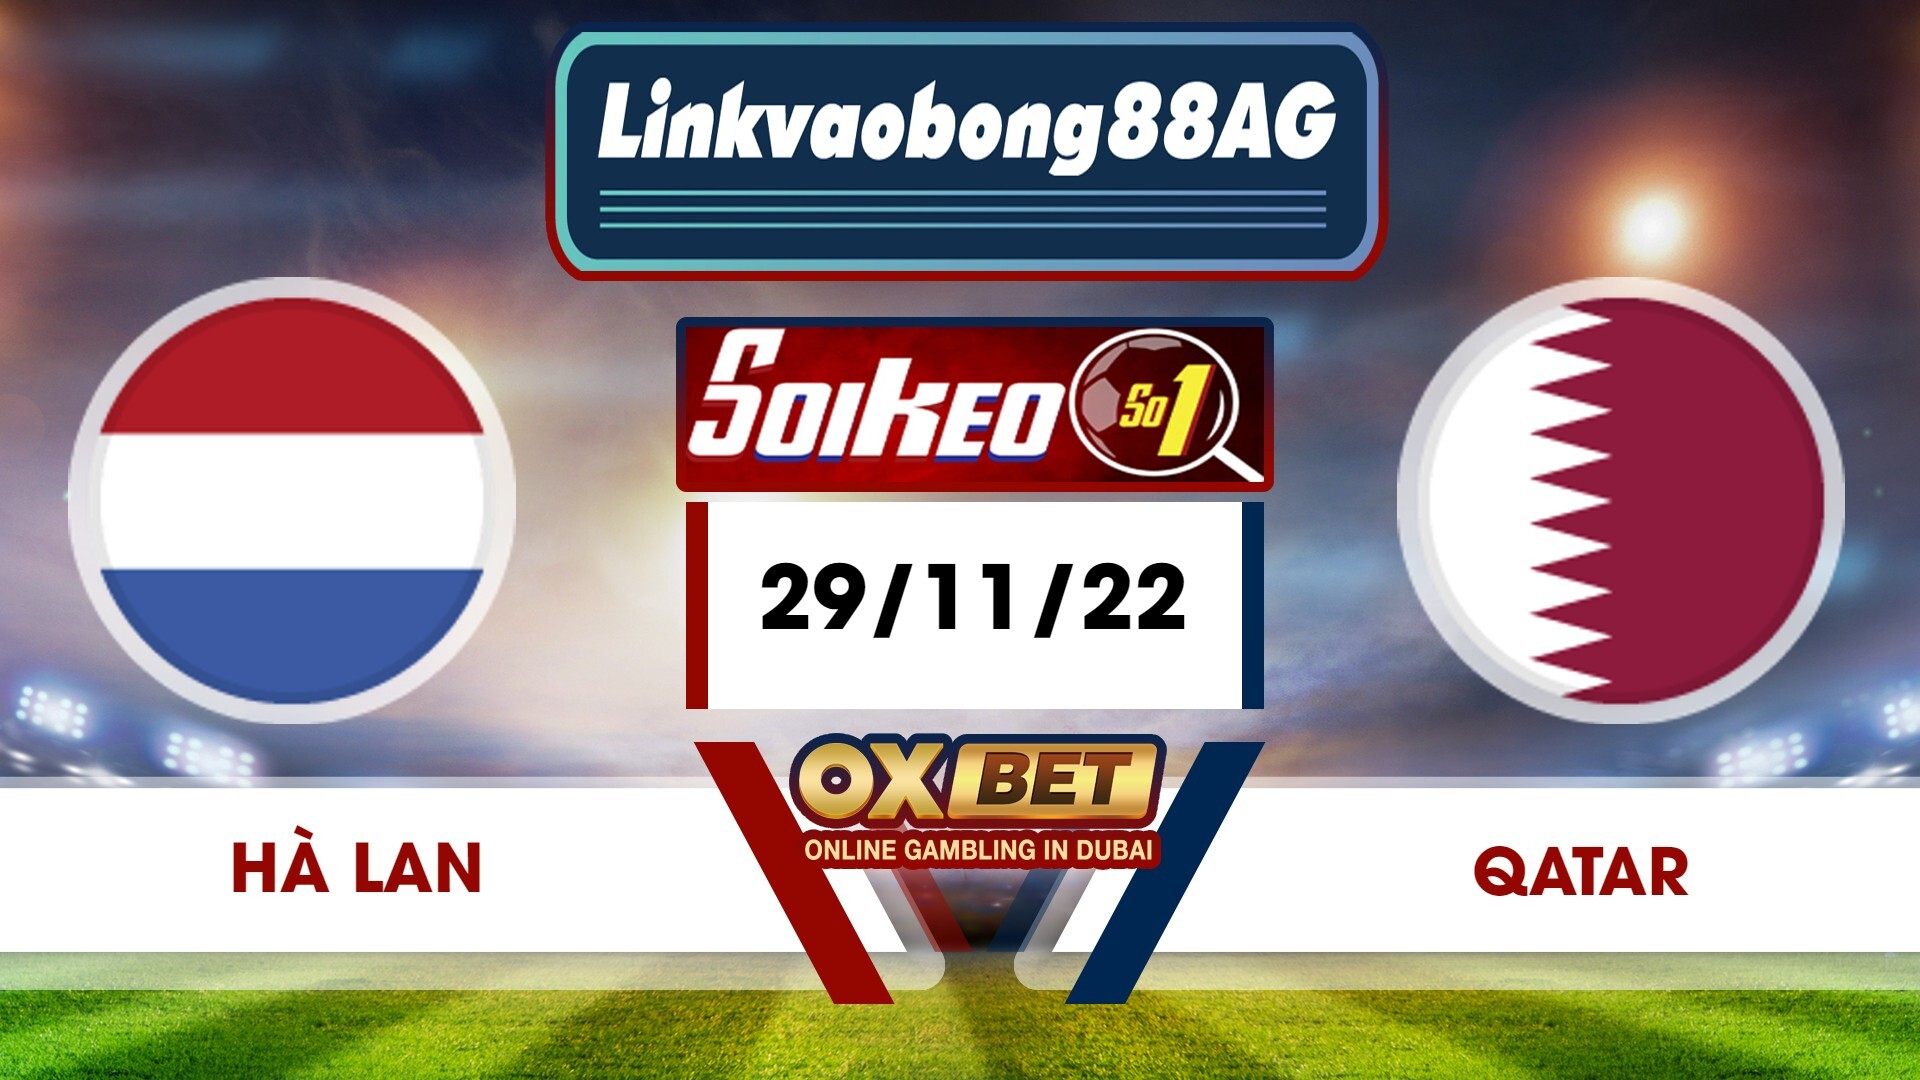 Soi kèo Bong88 Hà Lan vs Qatar – 29/11/2022 – 22h00 tối